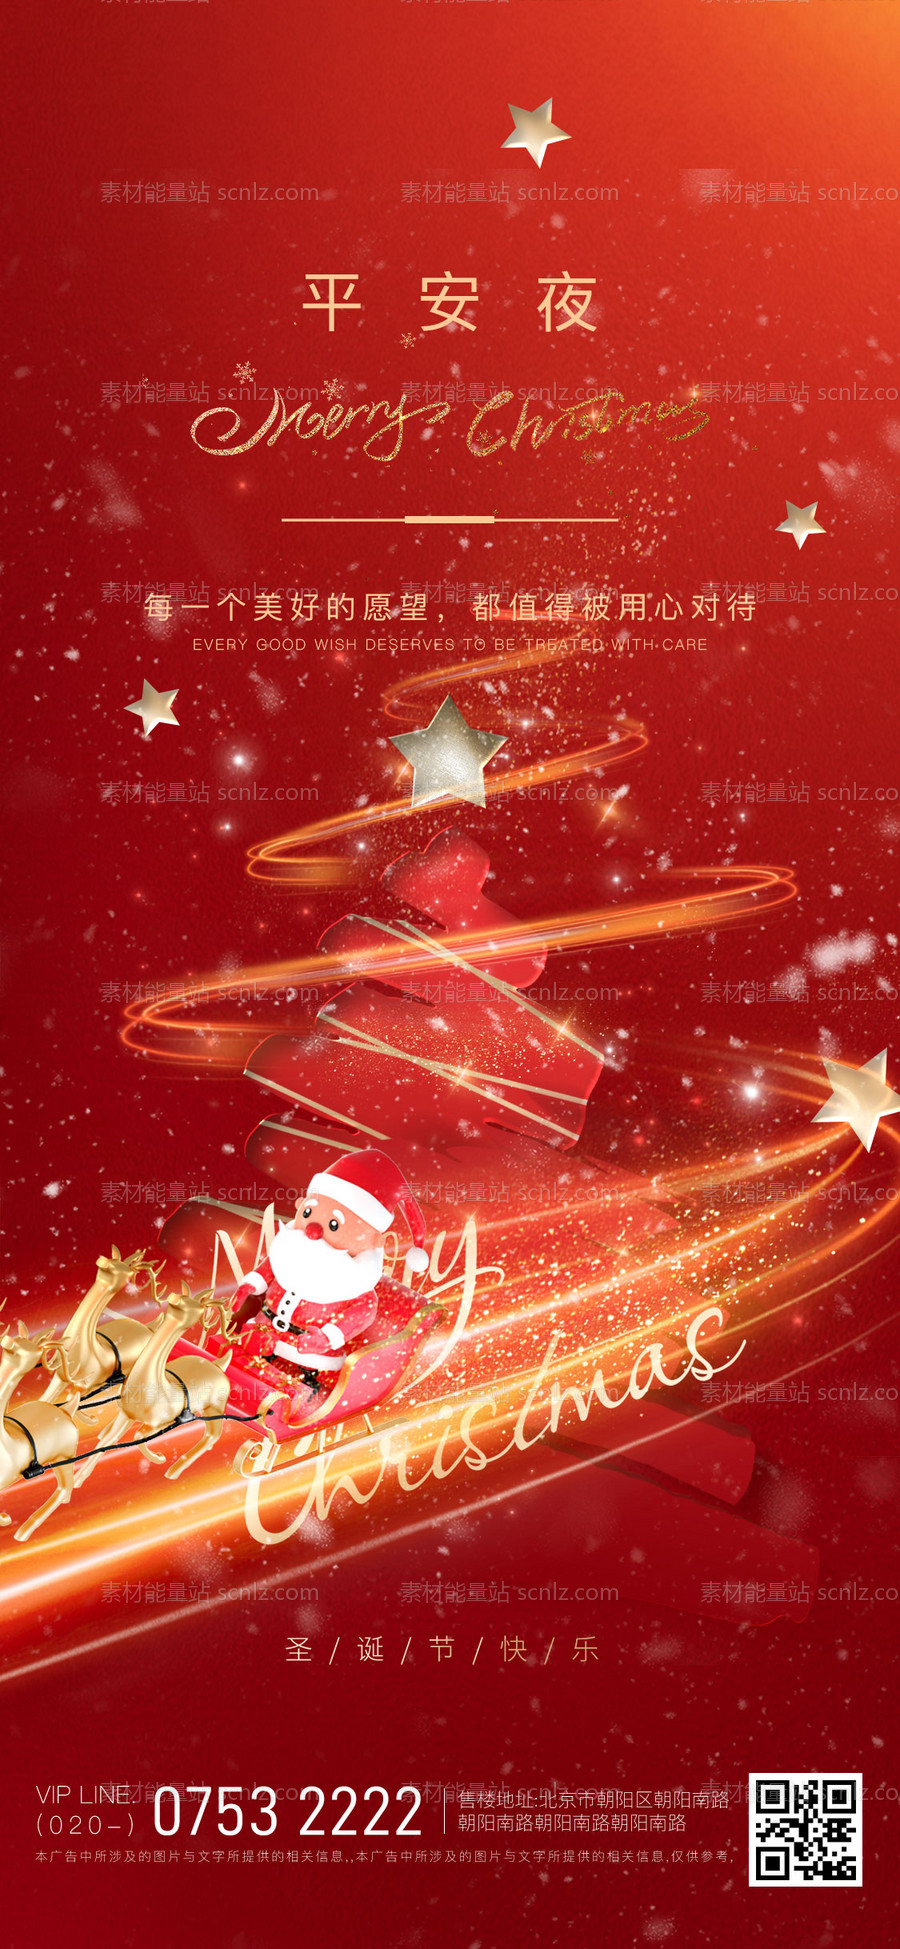 素材能量站-圣诞节平安夜红金海报